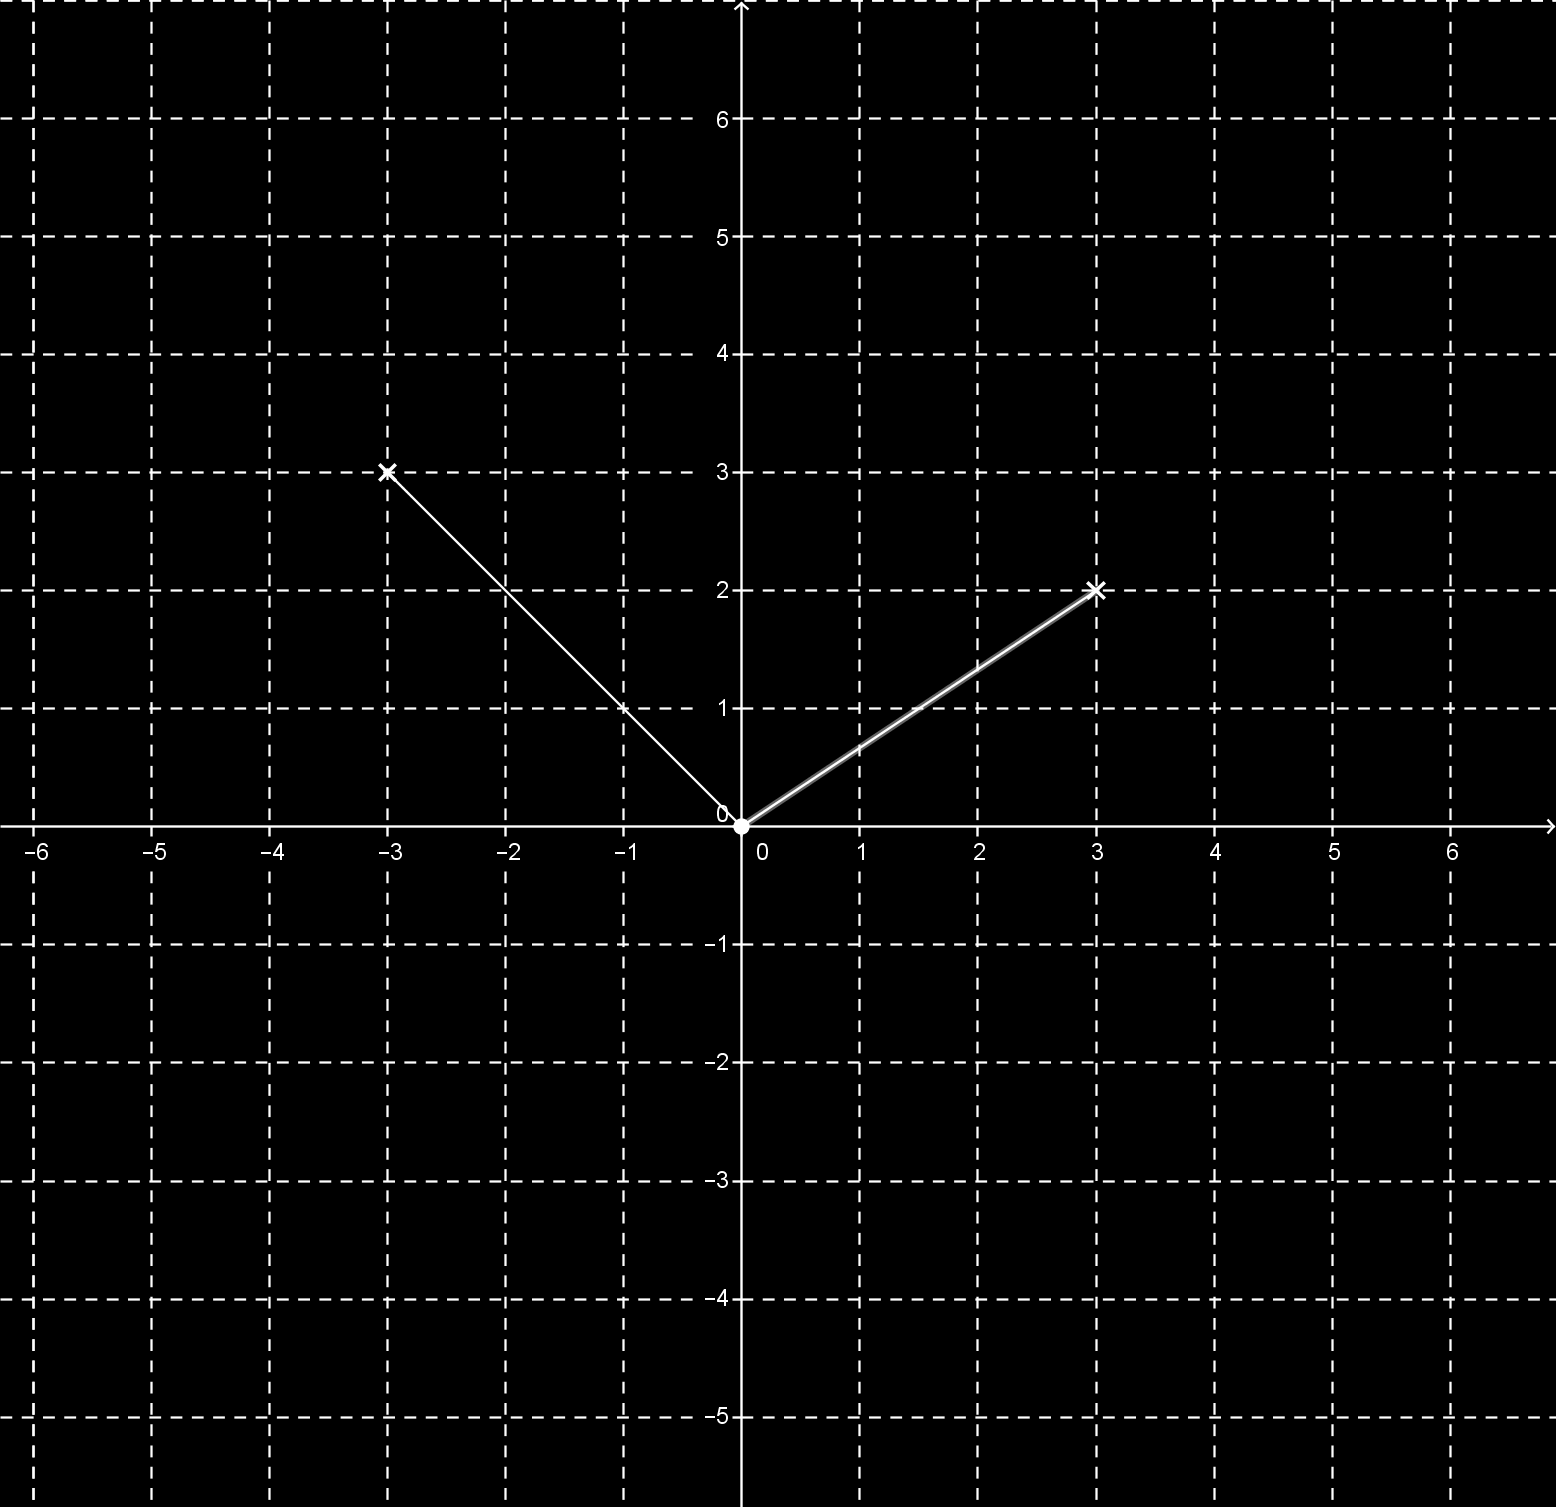 b) Ábrázold az y = f(x) függvény grafikonját (az értelmezési tartomány: 3 x 3). c) Ábrázold az y = f(x)+2 függvény grafikonját (az értelmezési tartomány: 3 x 3).